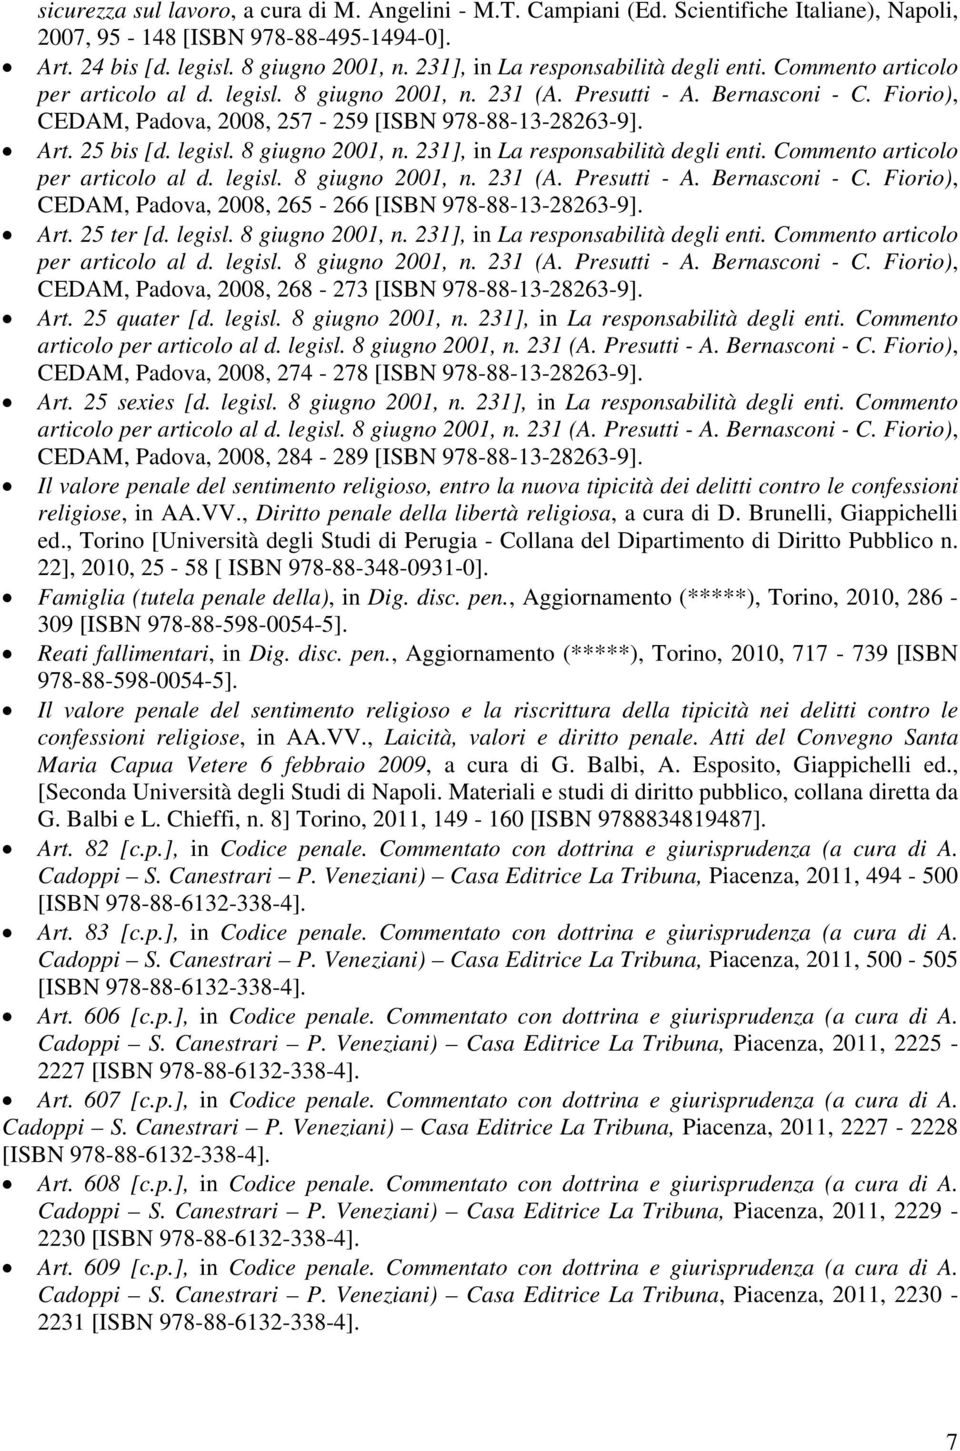 Fiorio), CEDAM, Padova, 2008, 257-259 [ISBN 978-88-13-28263-9]. Art. 25 bis [d. legisl. 8 giugno 2001, n.  Fiorio), CEDAM, Padova, 2008, 265-266 [ISBN 978-88-13-28263-9]. Art. 25 ter [d. legisl. 8 giugno 2001, n.  Fiorio), CEDAM, Padova, 2008, 268-273 [ISBN 978-88-13-28263-9].